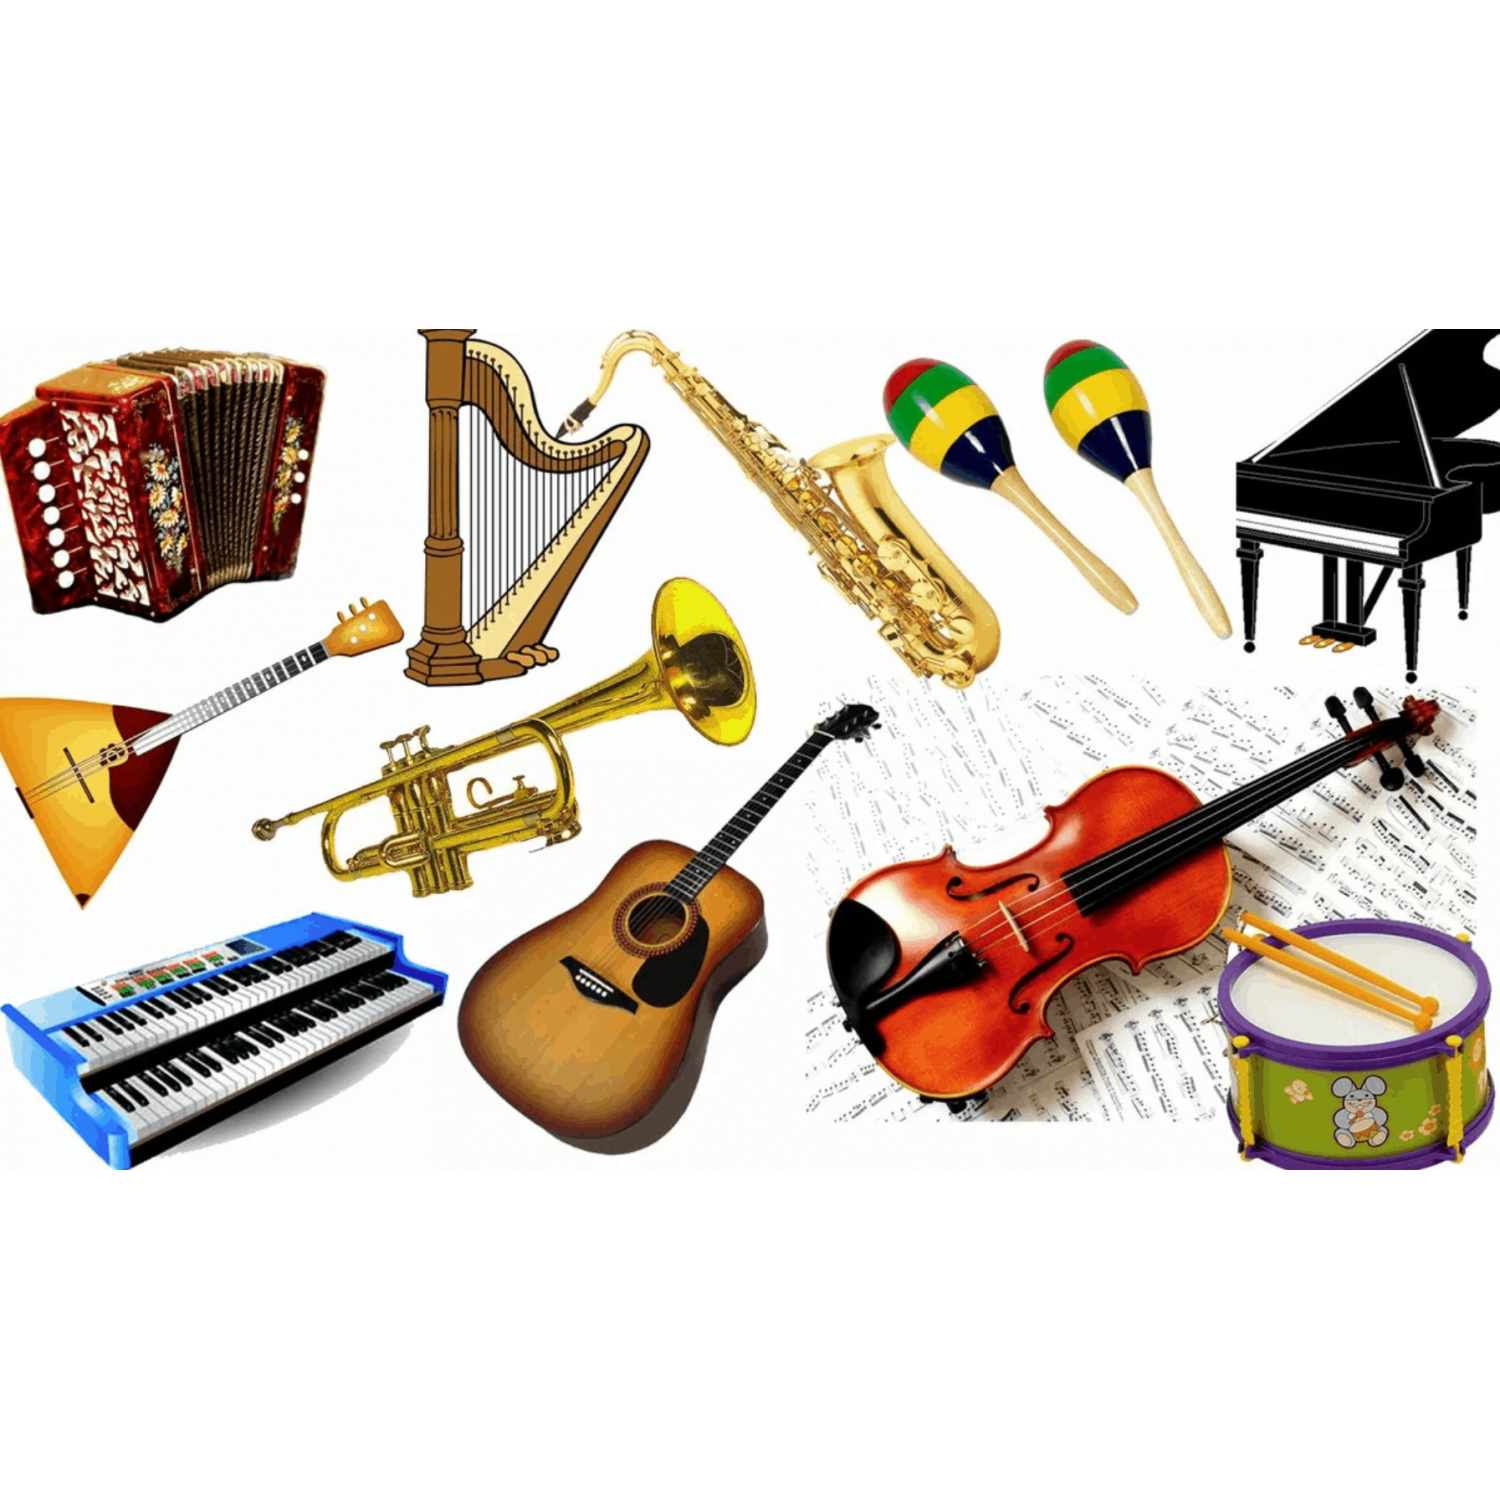 Какой инструмент не музыкальный звук. Музыкальные инструменты. Музыкальные инструменты для детей. Музыкальные инструменты для дошкольников. Музыкальные инструменты иллюстрации.